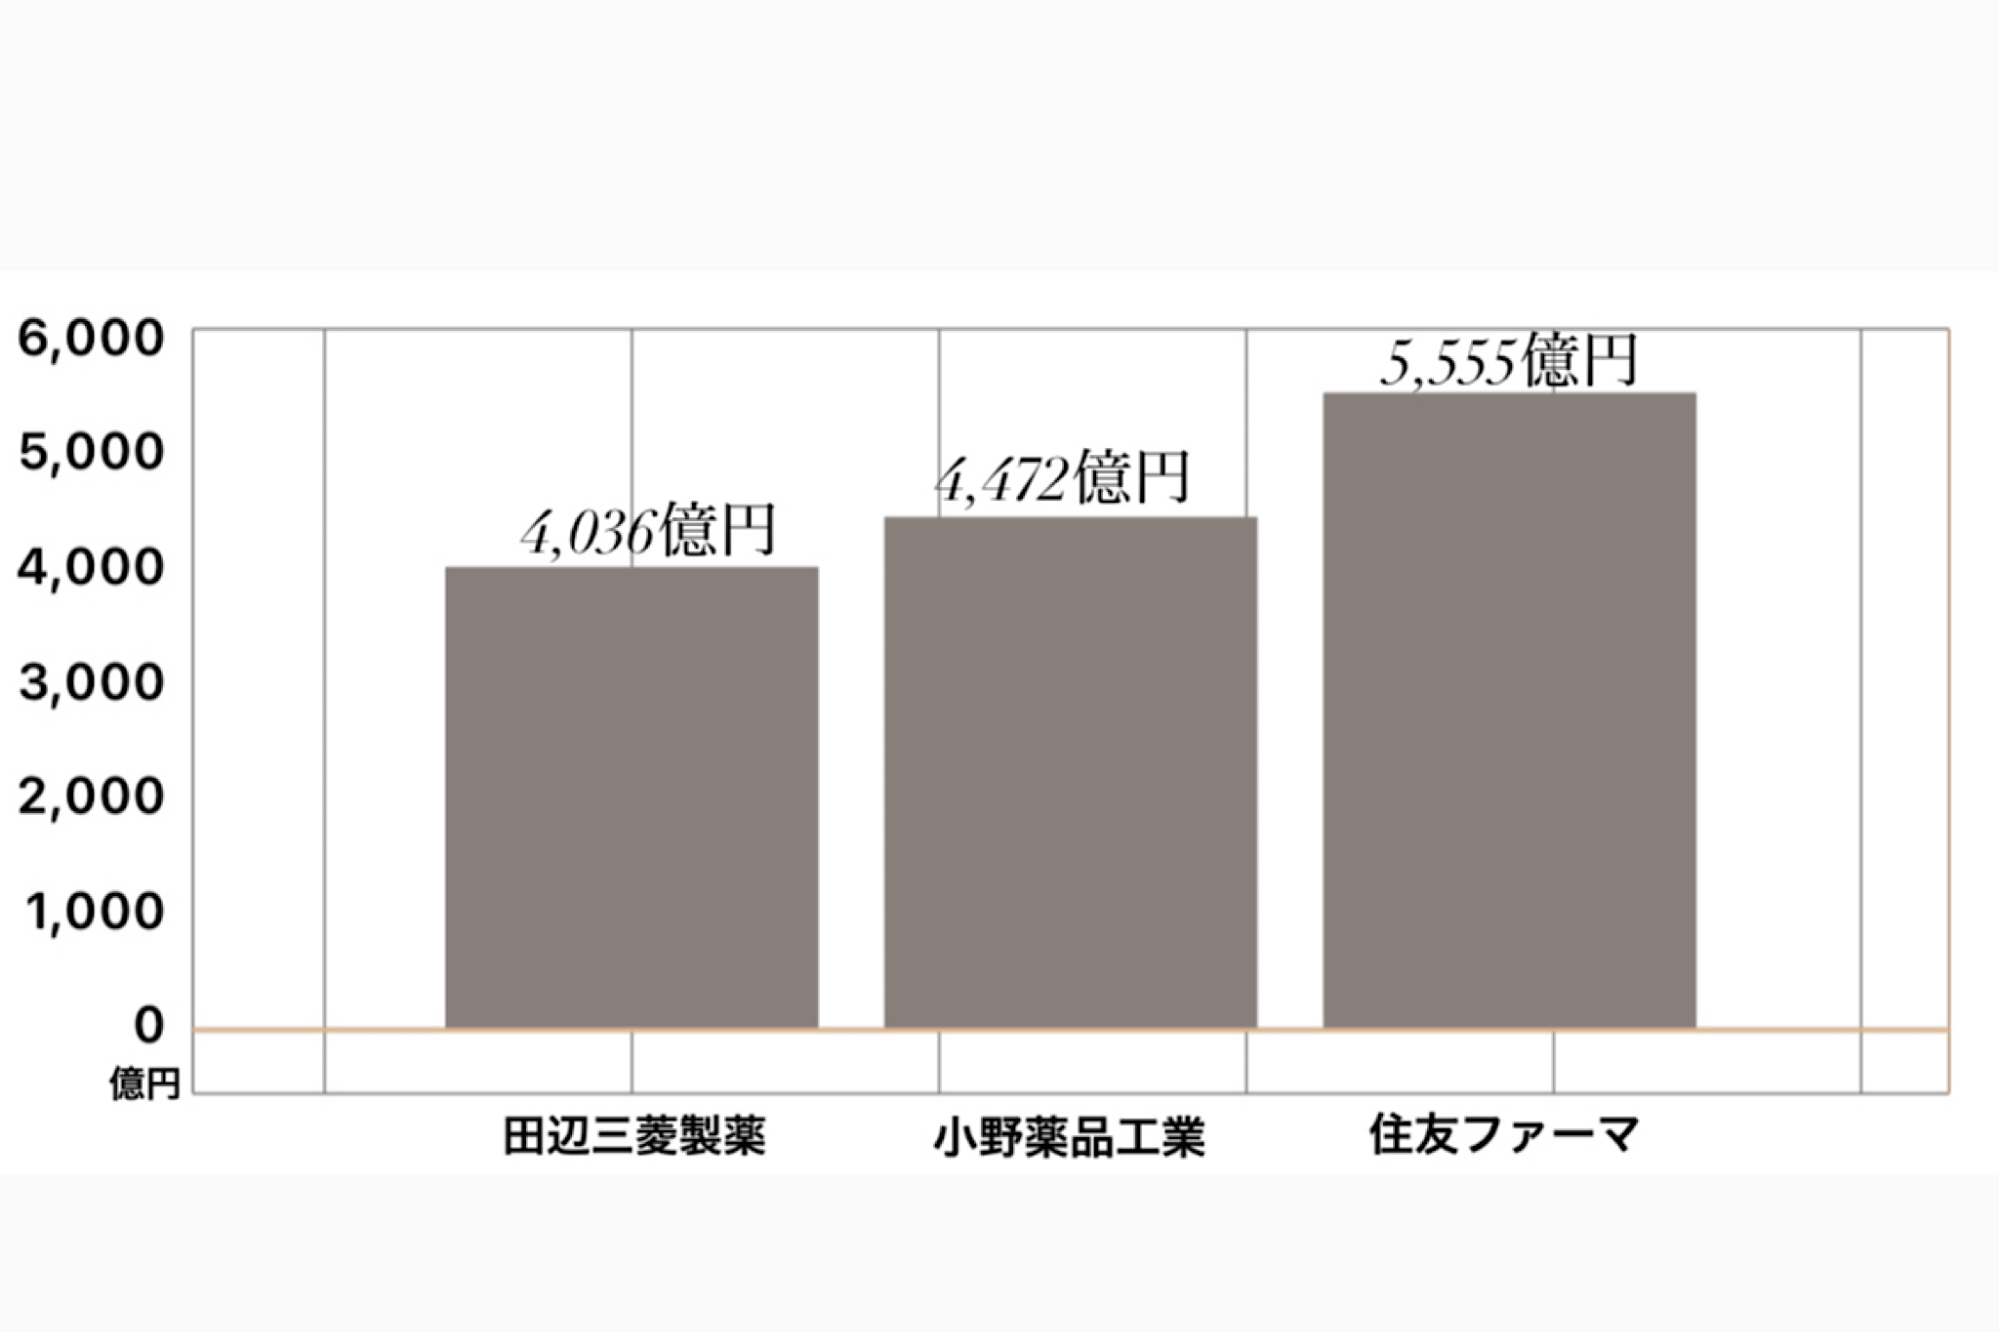 田辺三菱製薬 競合含む売上高グラフ